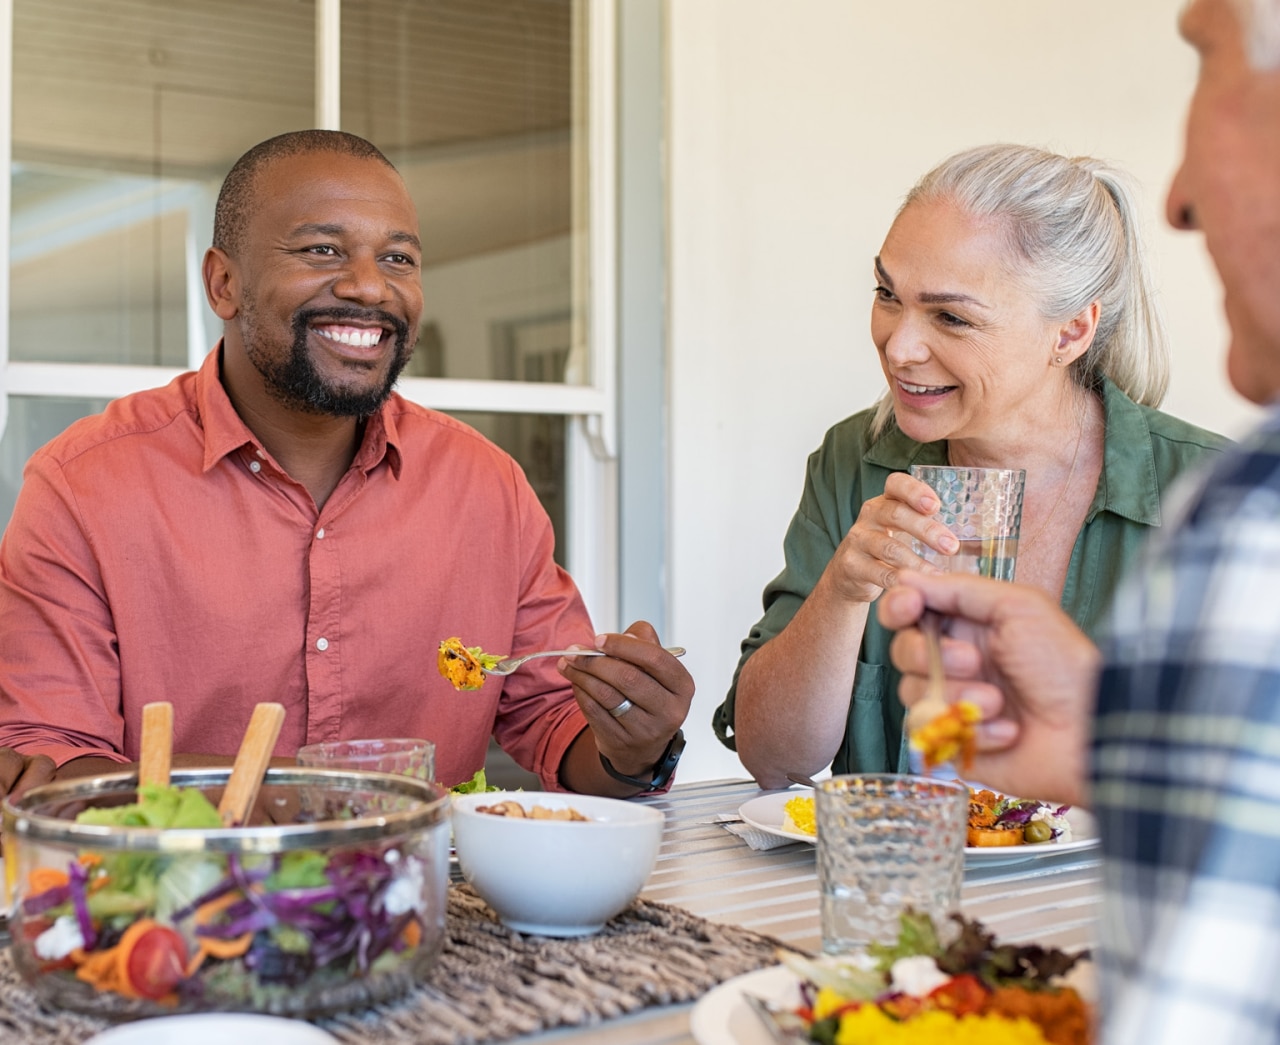 Amigos felices y sonrientes disfrutando de un almuerzo juntos en casa. Personas maduras multiétnicas celebrando una ocasión feliz mientras comen alimentos saludables. Grupo de pareja de ancianos y pareja africana hablando durante la comida.